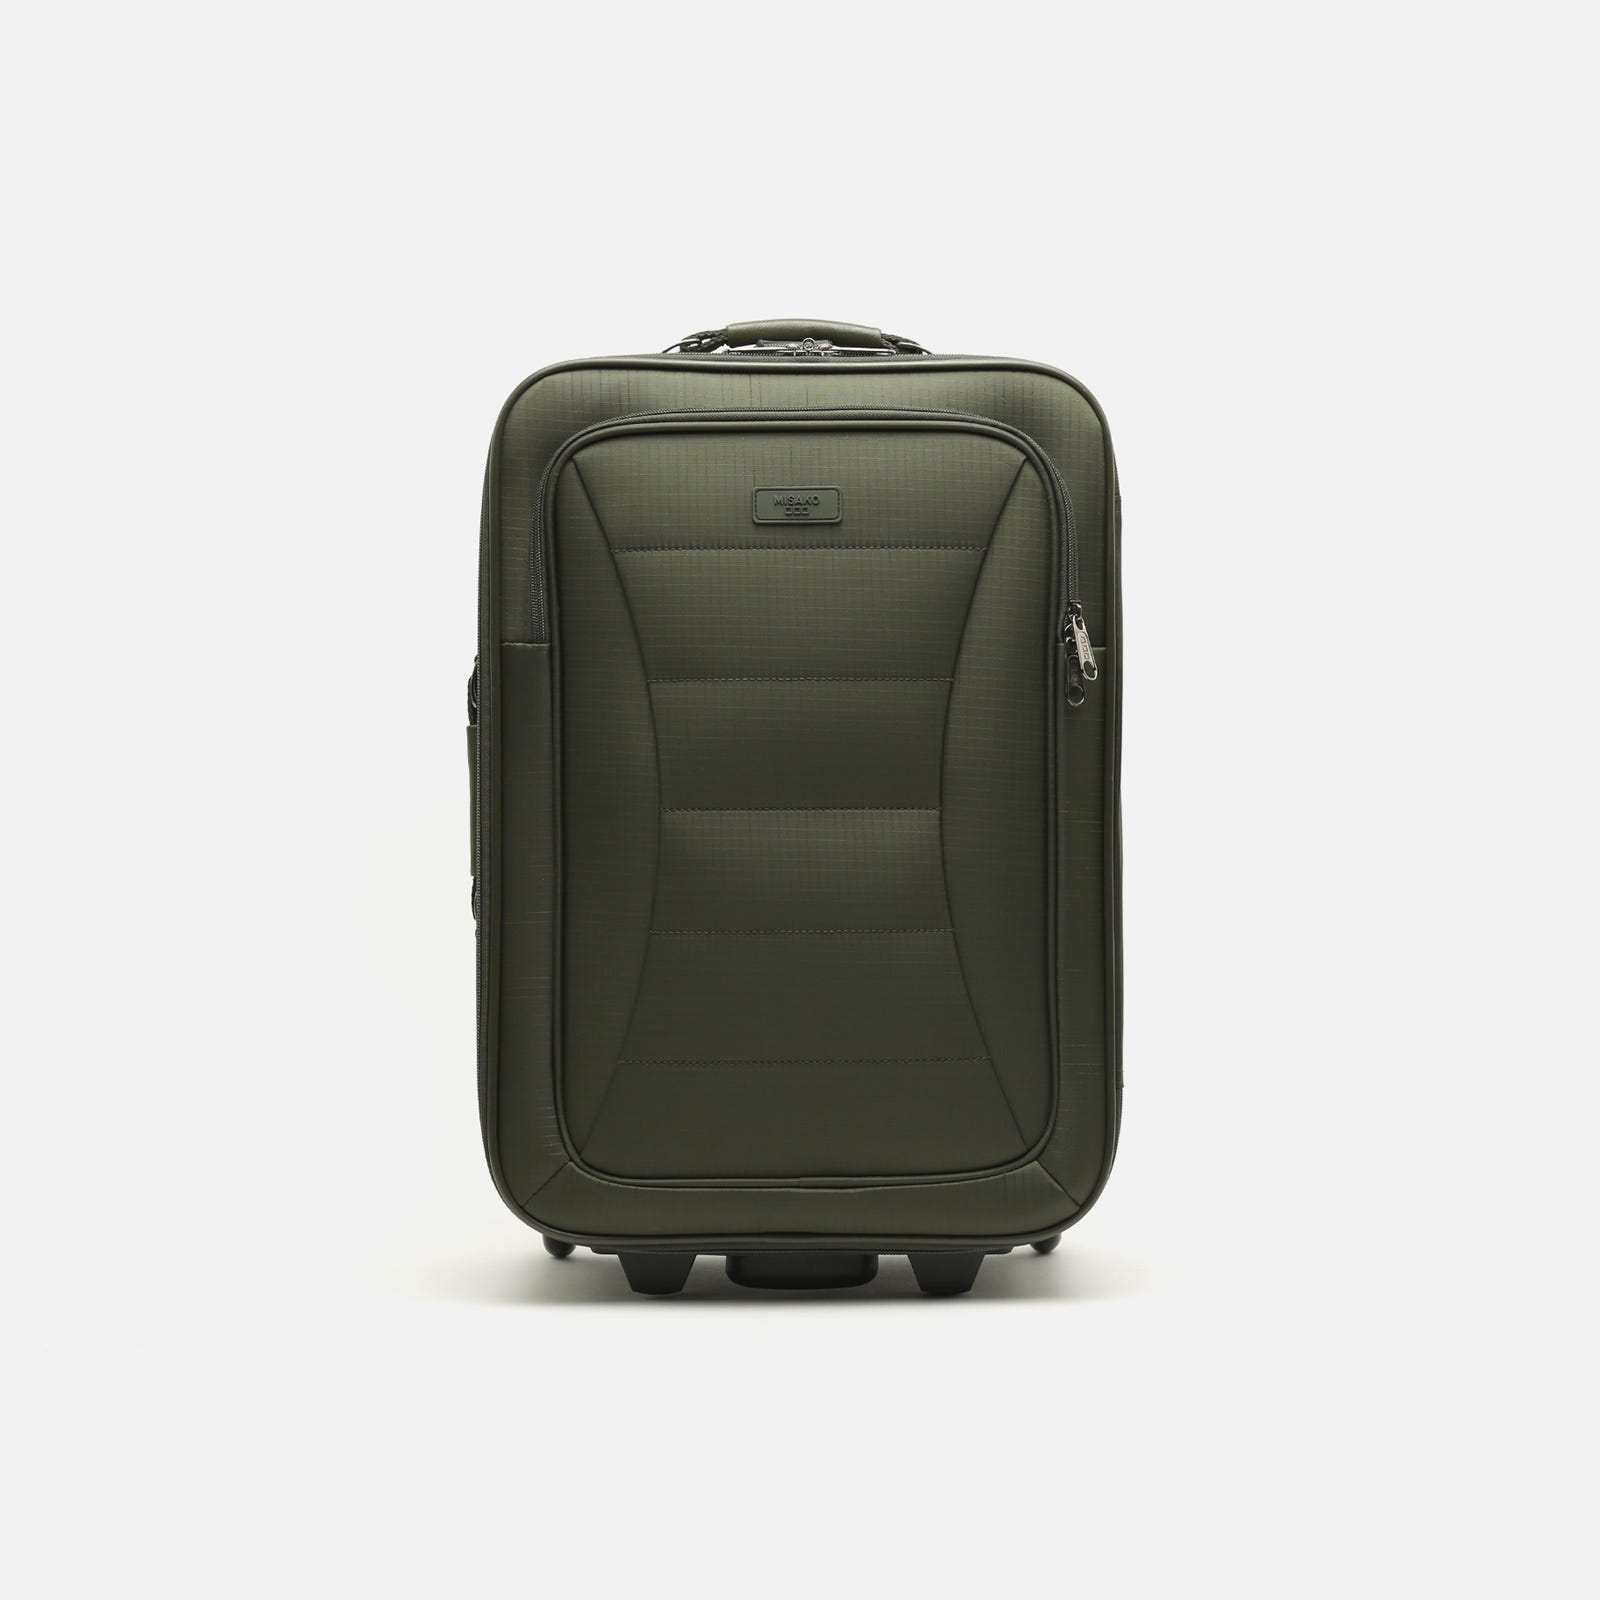 ¿Se pueden encontrar opciones de maletas de cabina con compartimentos especiales para dispositivos electrónicos?